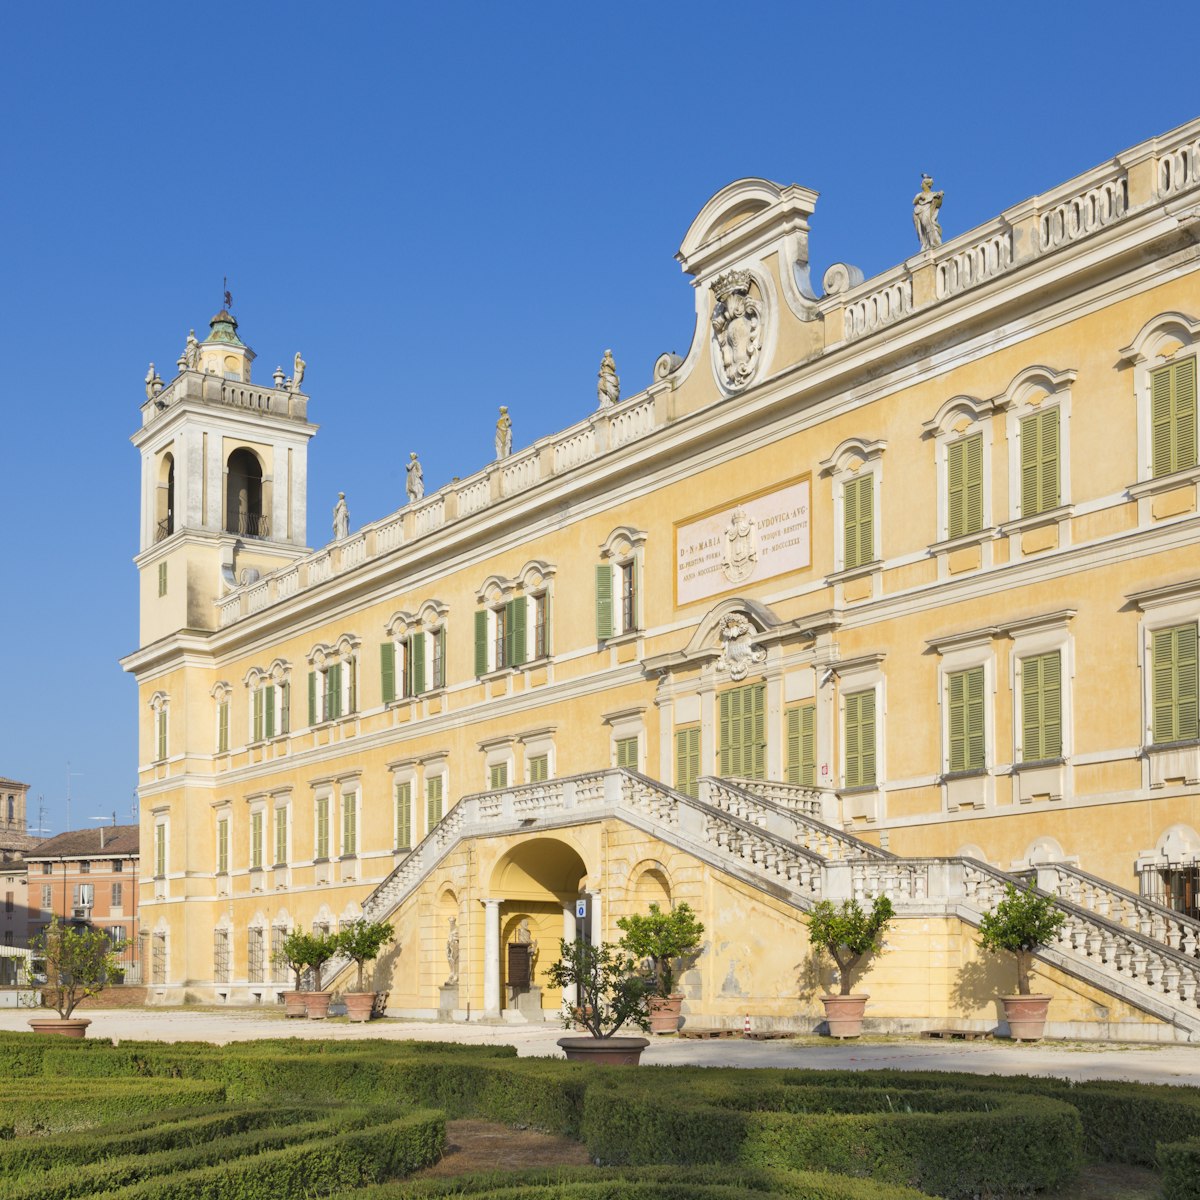 Parma - The palace Palazzo Ducale in La Reggia di Colorno.
1498962765
emilia romagna, evening, historical, landmark, palazzo ducale, park, parma, portal, reggia di colorno, square
